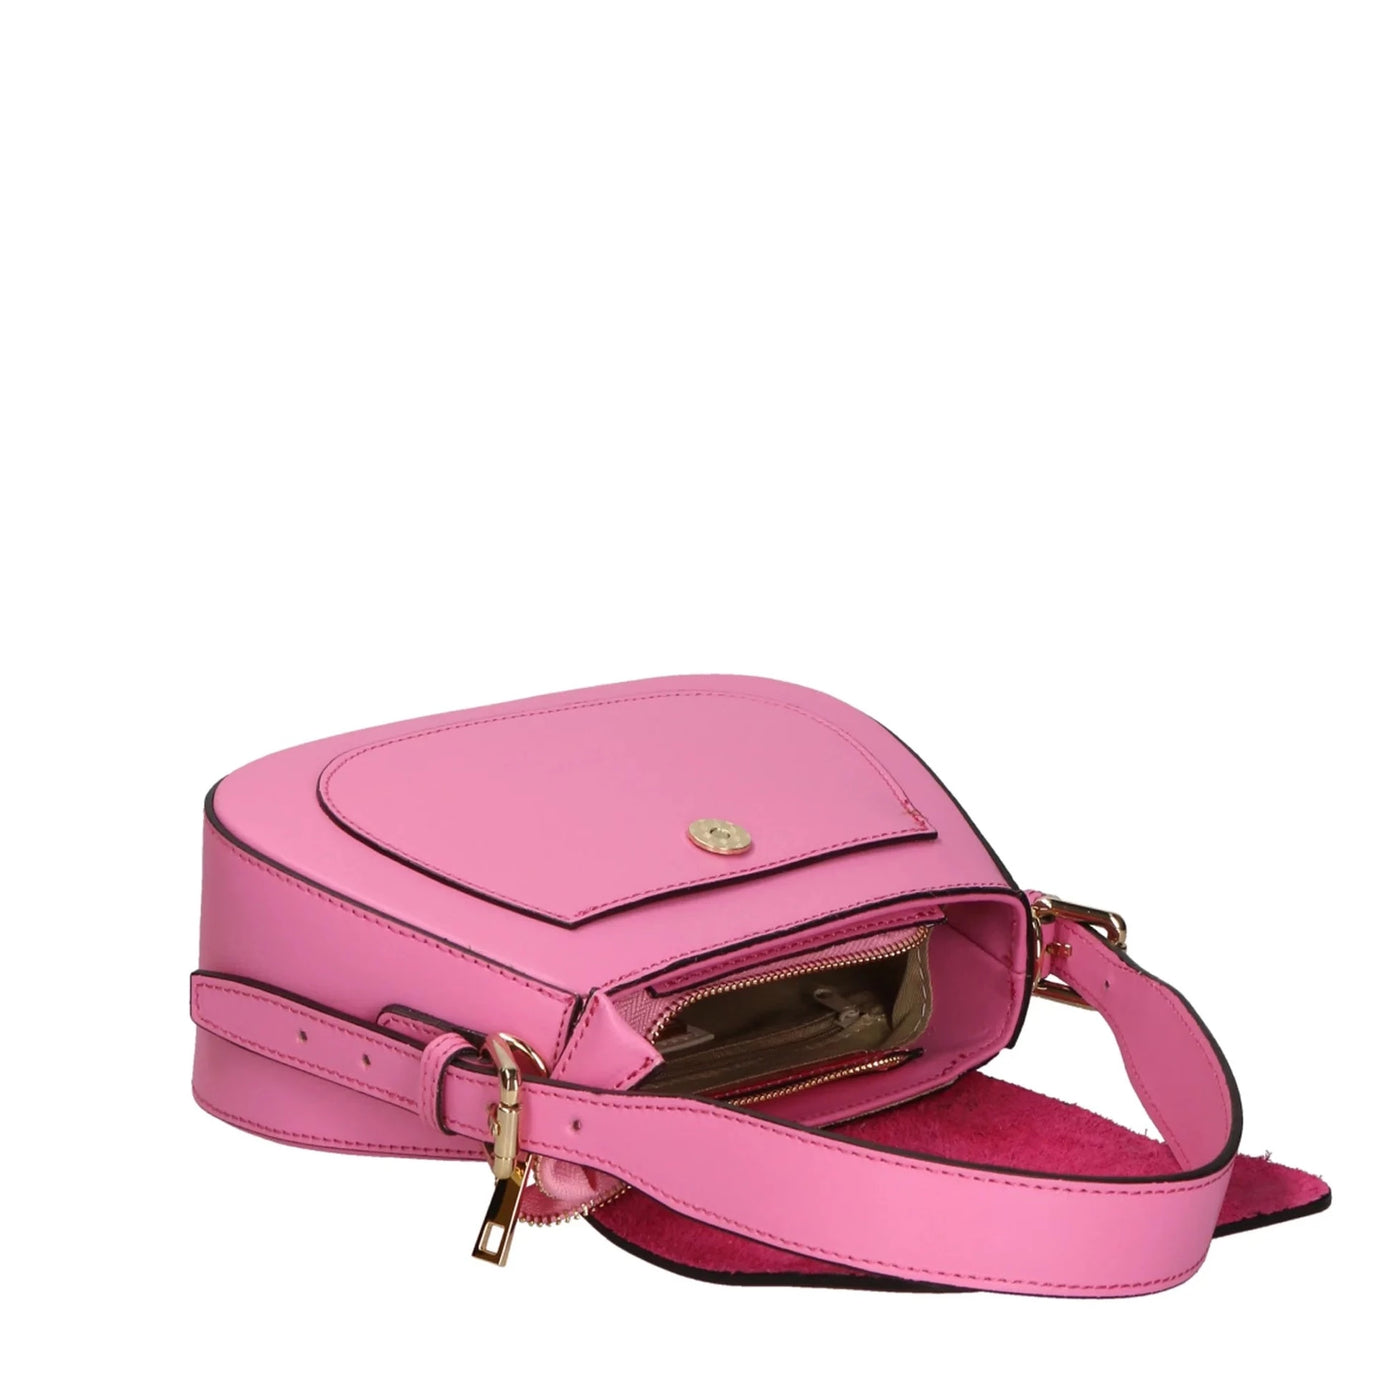 Leather bag with 2 shoulder straps "Milan", Light pink